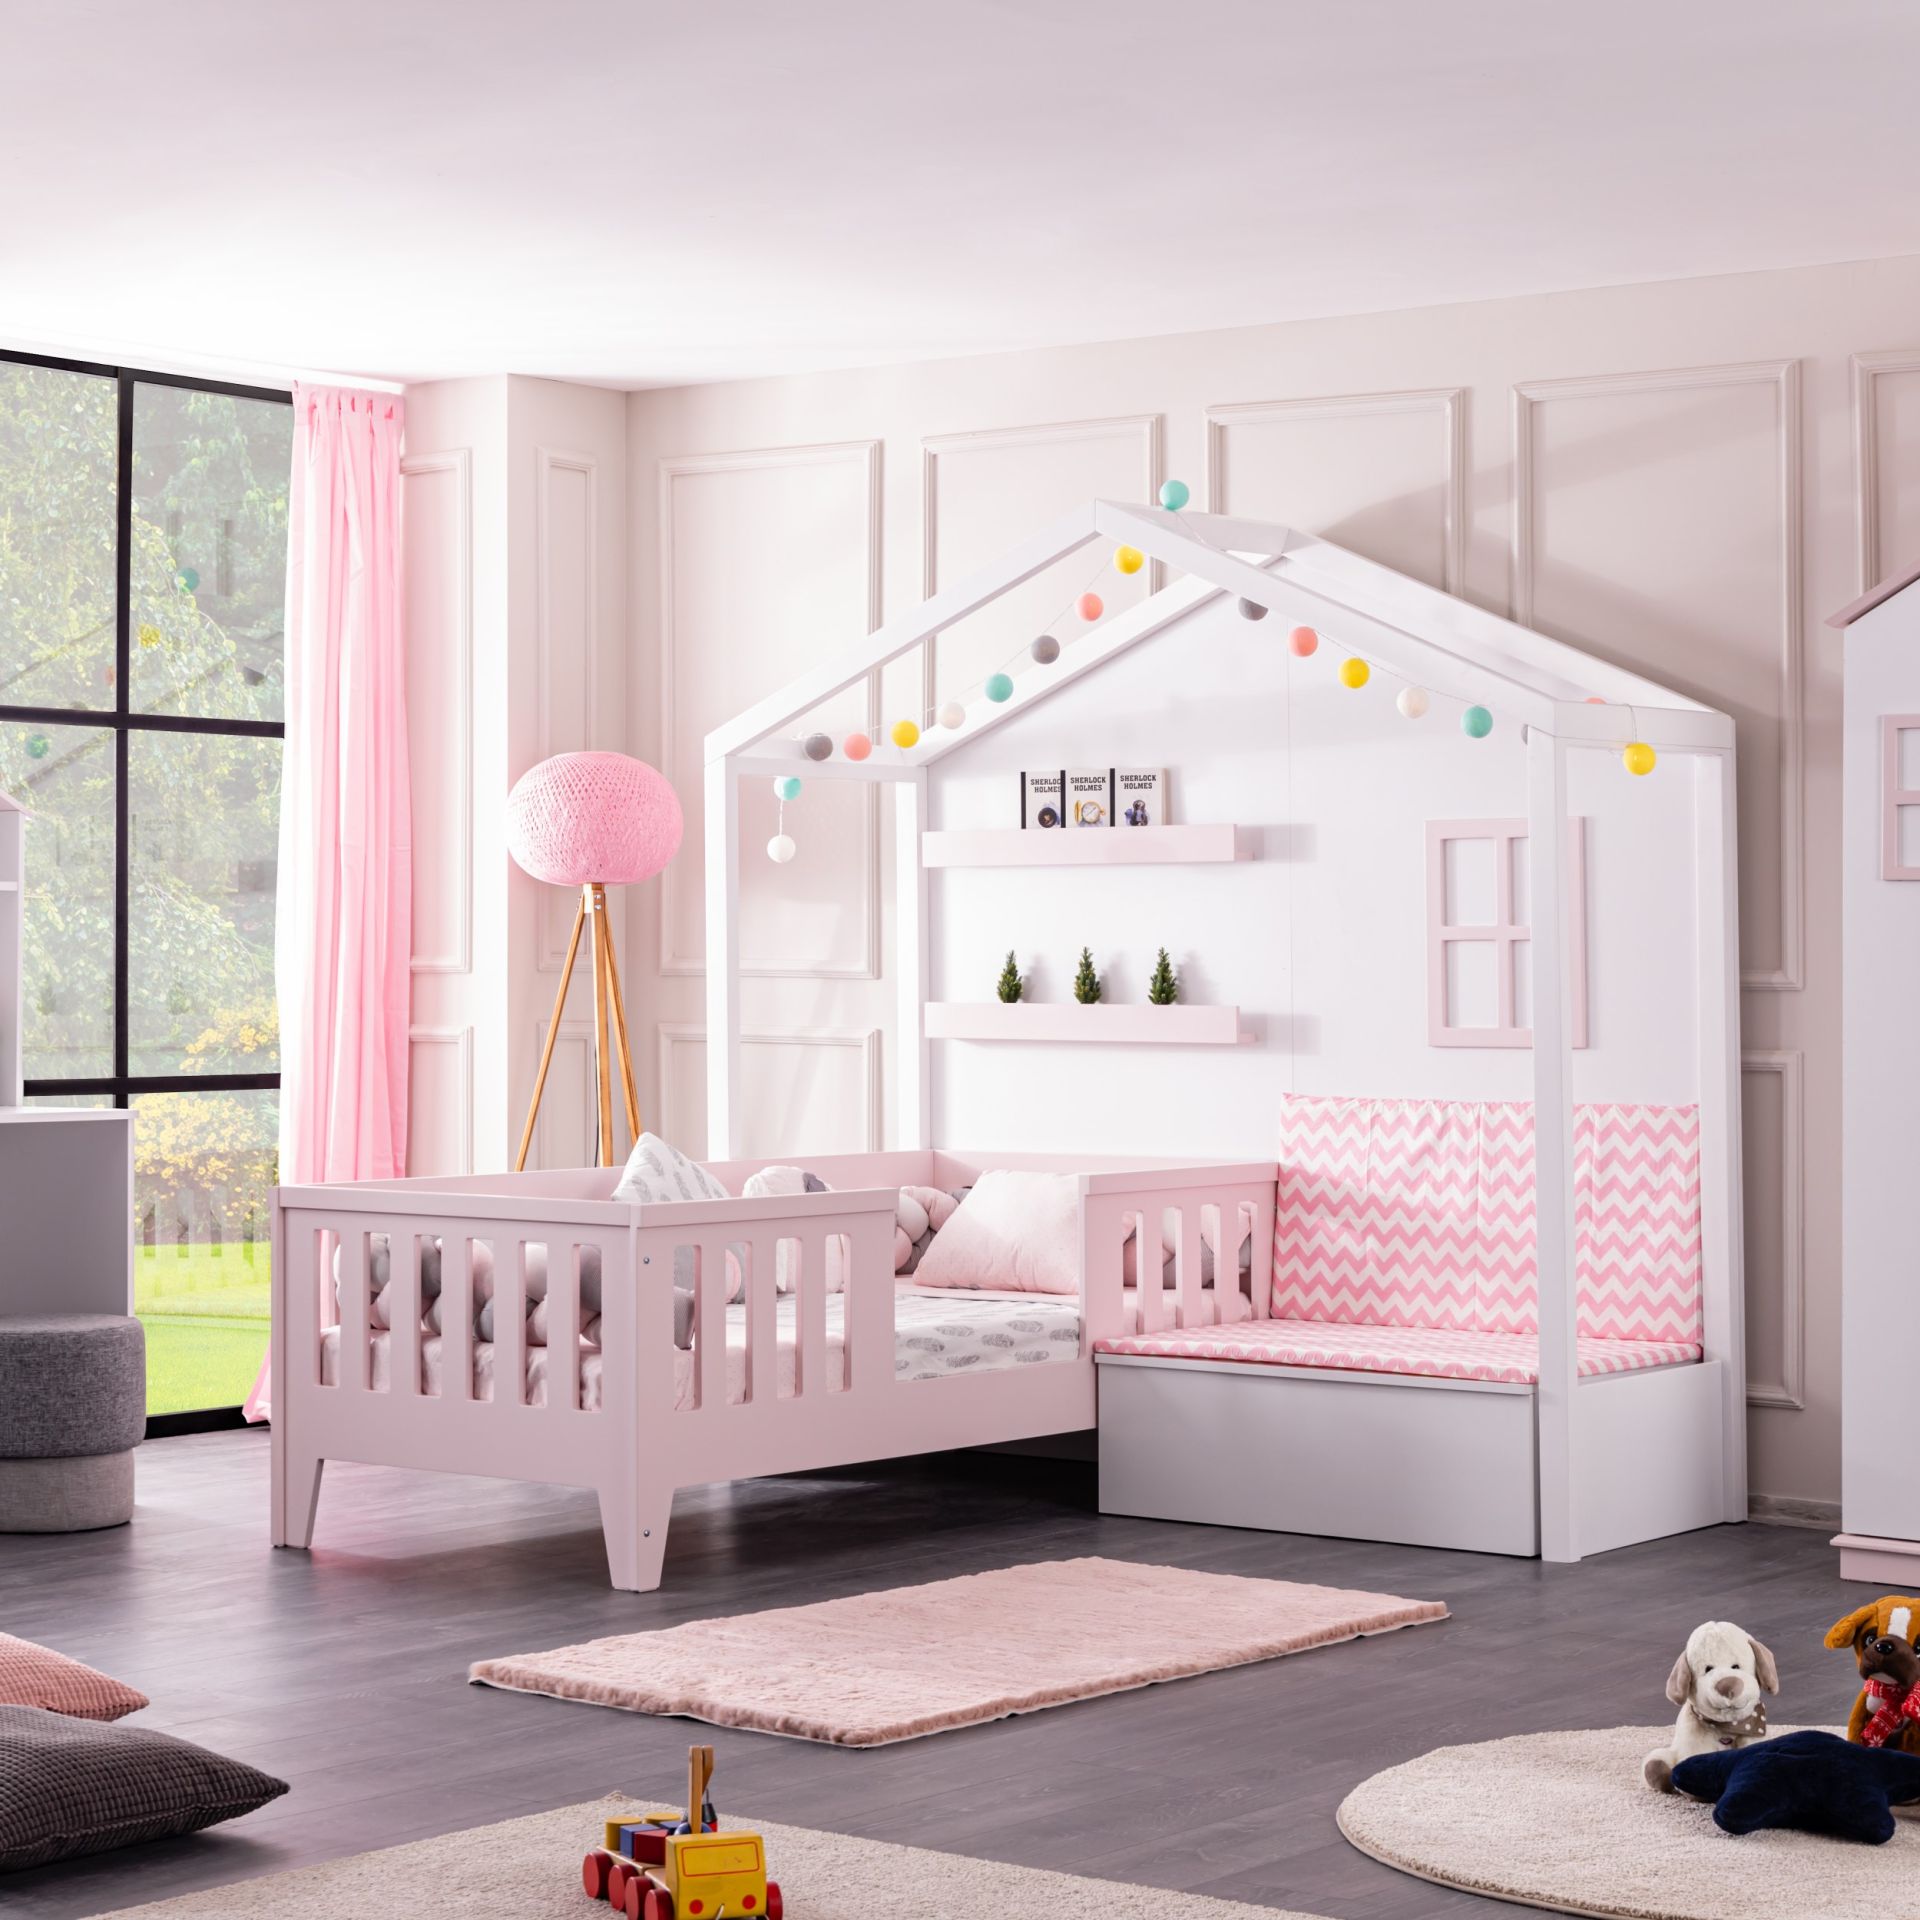 Kinderbett mit Hauswand Cesme Pink